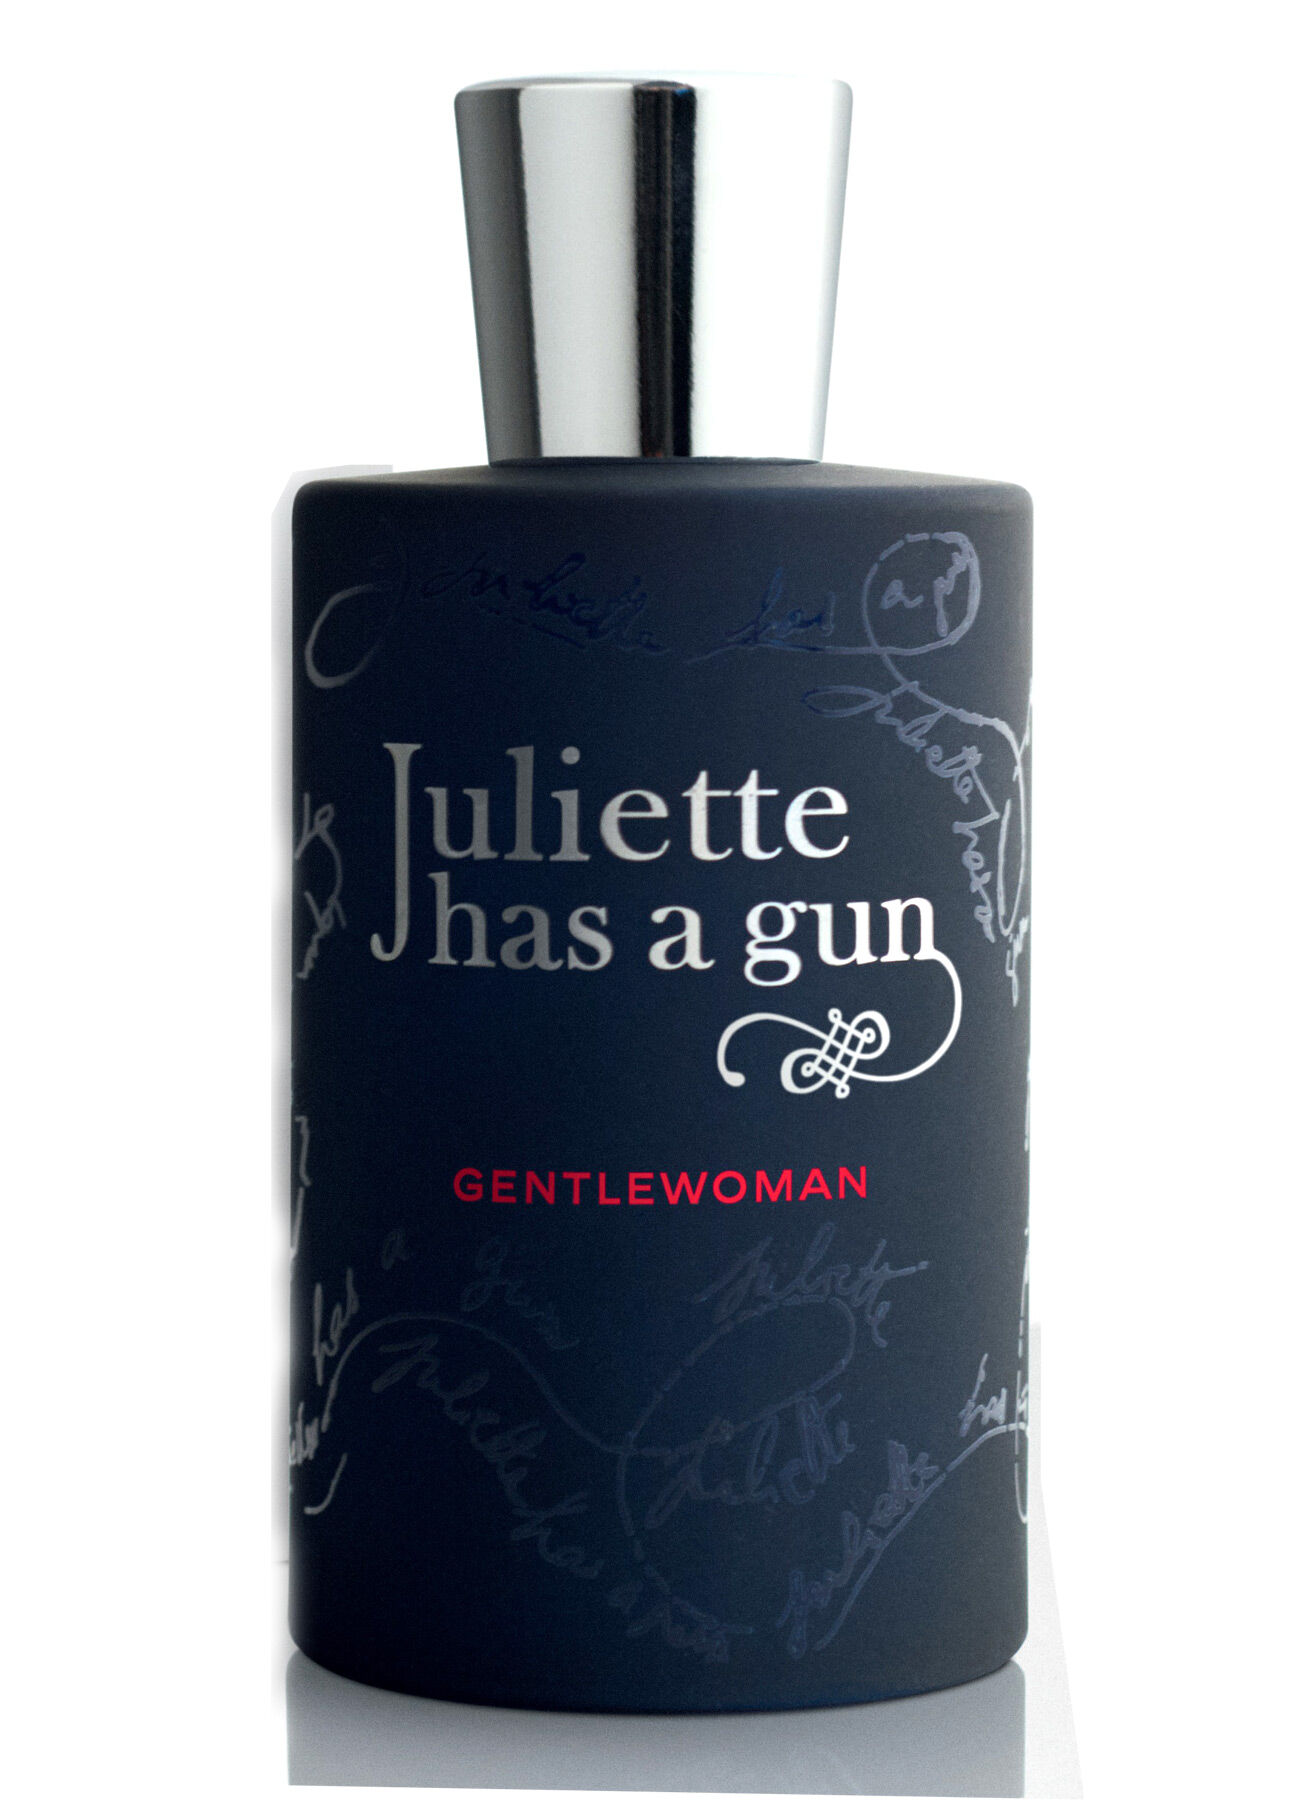 Джульет парфюм. Парфюм Juliette has a Gun. Juliette has a Gun gentlewoman парфюмерная вода (женские) 100ml. Аромат Juliette has a Gun. Juliette has a Gun gentlewoman.